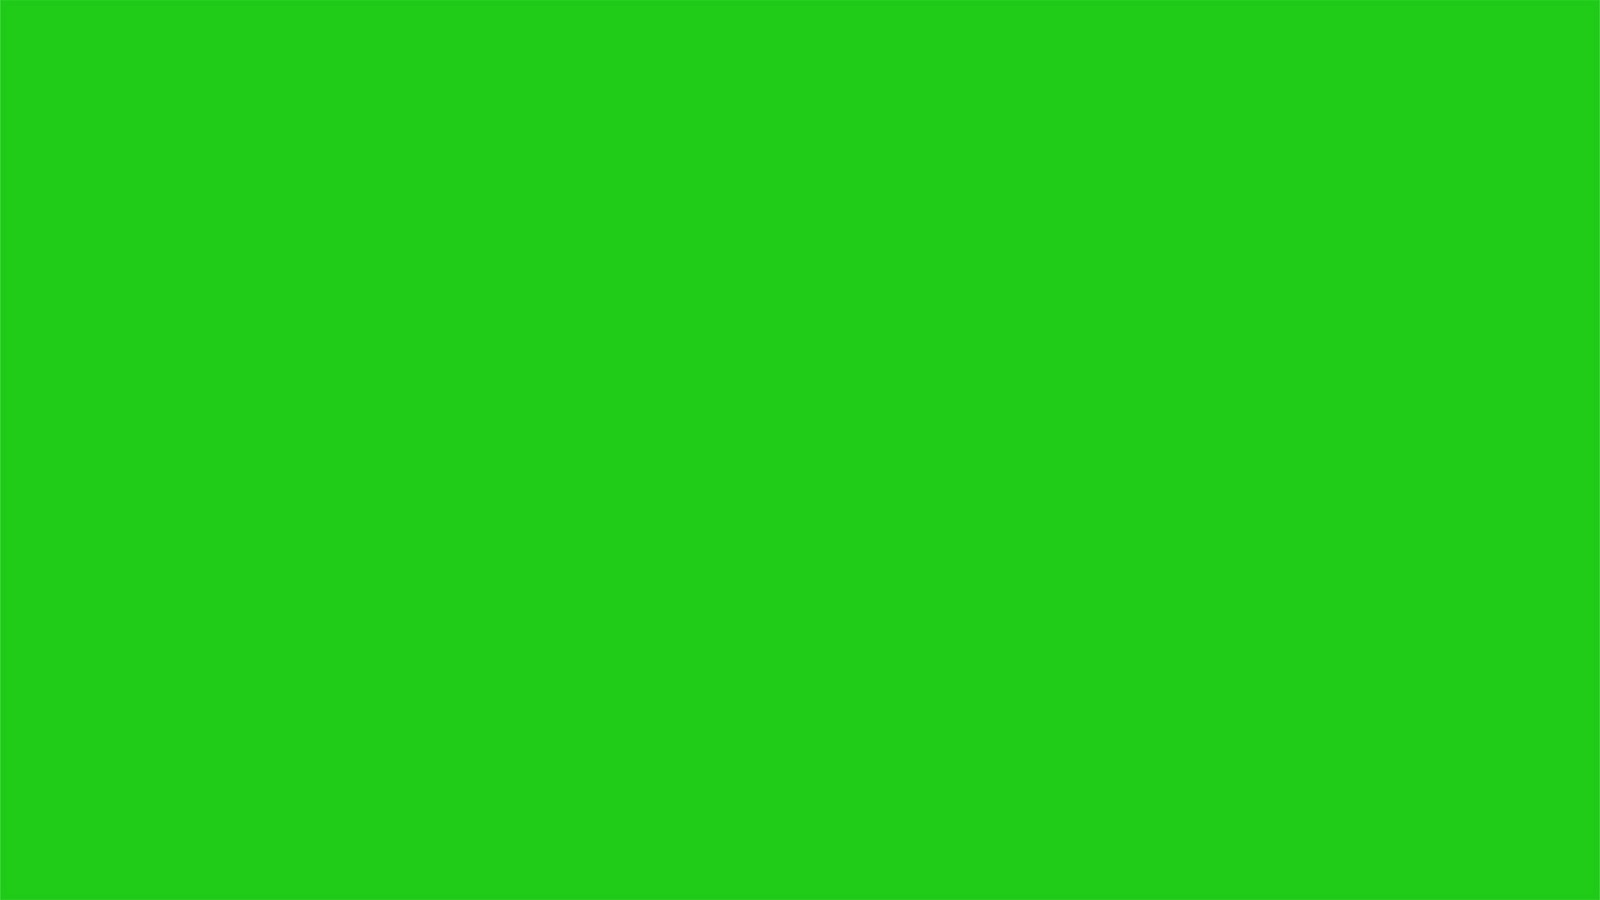 75+] Green Screen Wallpaper - WallpaperSafari - Với tập hợp hơn 75 hình nền ưu đãi, độc đáo chỉ với một nền xanh, đây là điều không thể bỏ qua cho những ai đang tìm kiếm một phong cách mới mẻ. Hãy xem qua ngay bộ sưu tập để tìm cho mình một giải pháp hoàn hảo cho desktop hay điện thoại của bạn.